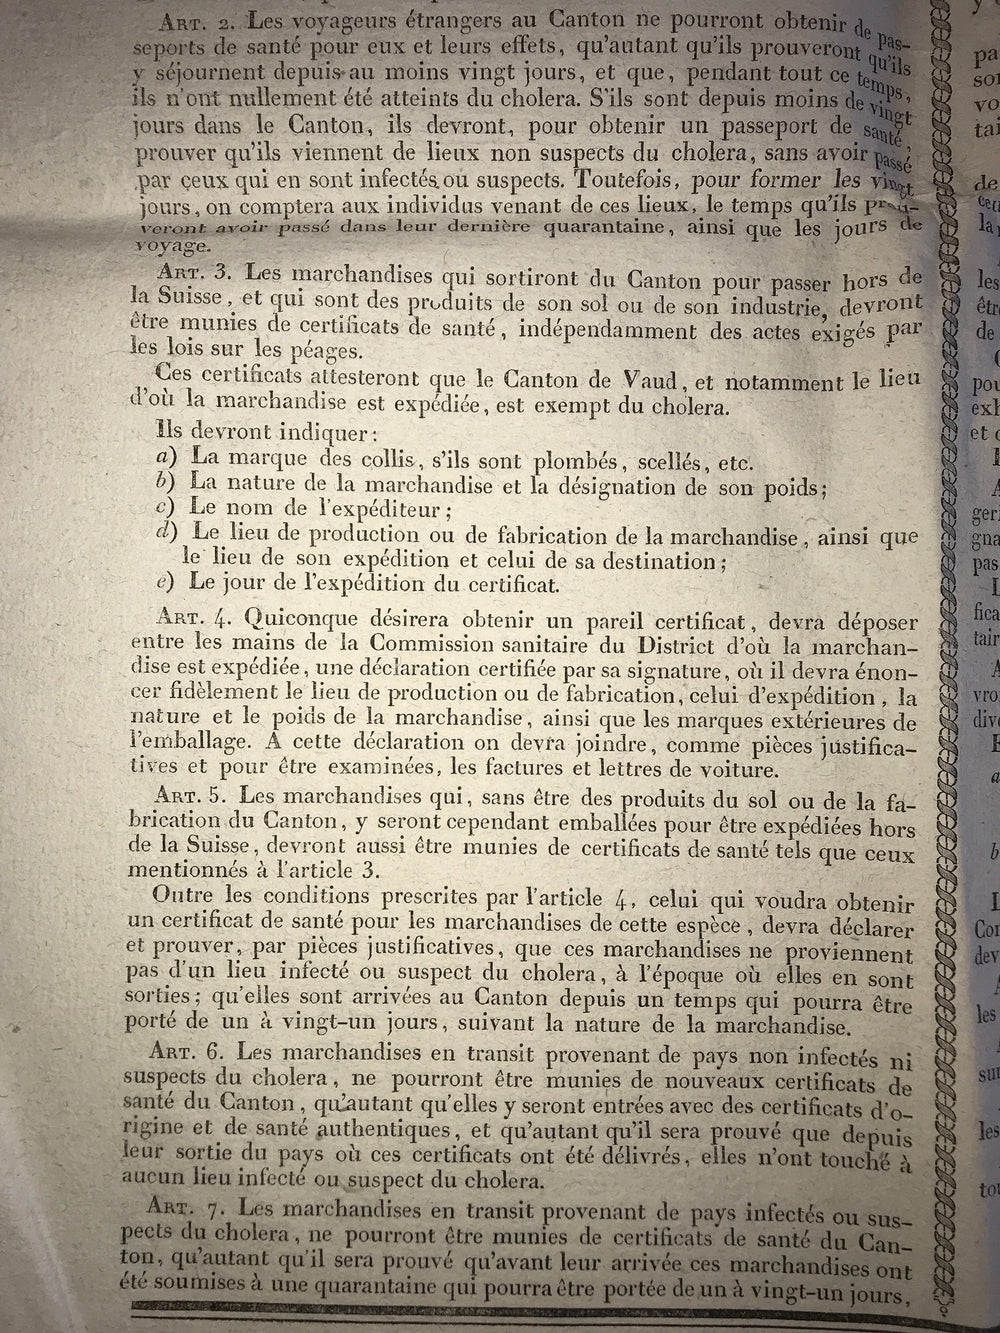 Proclamation du Conseil d'Etat du Canton de Vaud - Mesures pour se préserver du Choléra Morbus